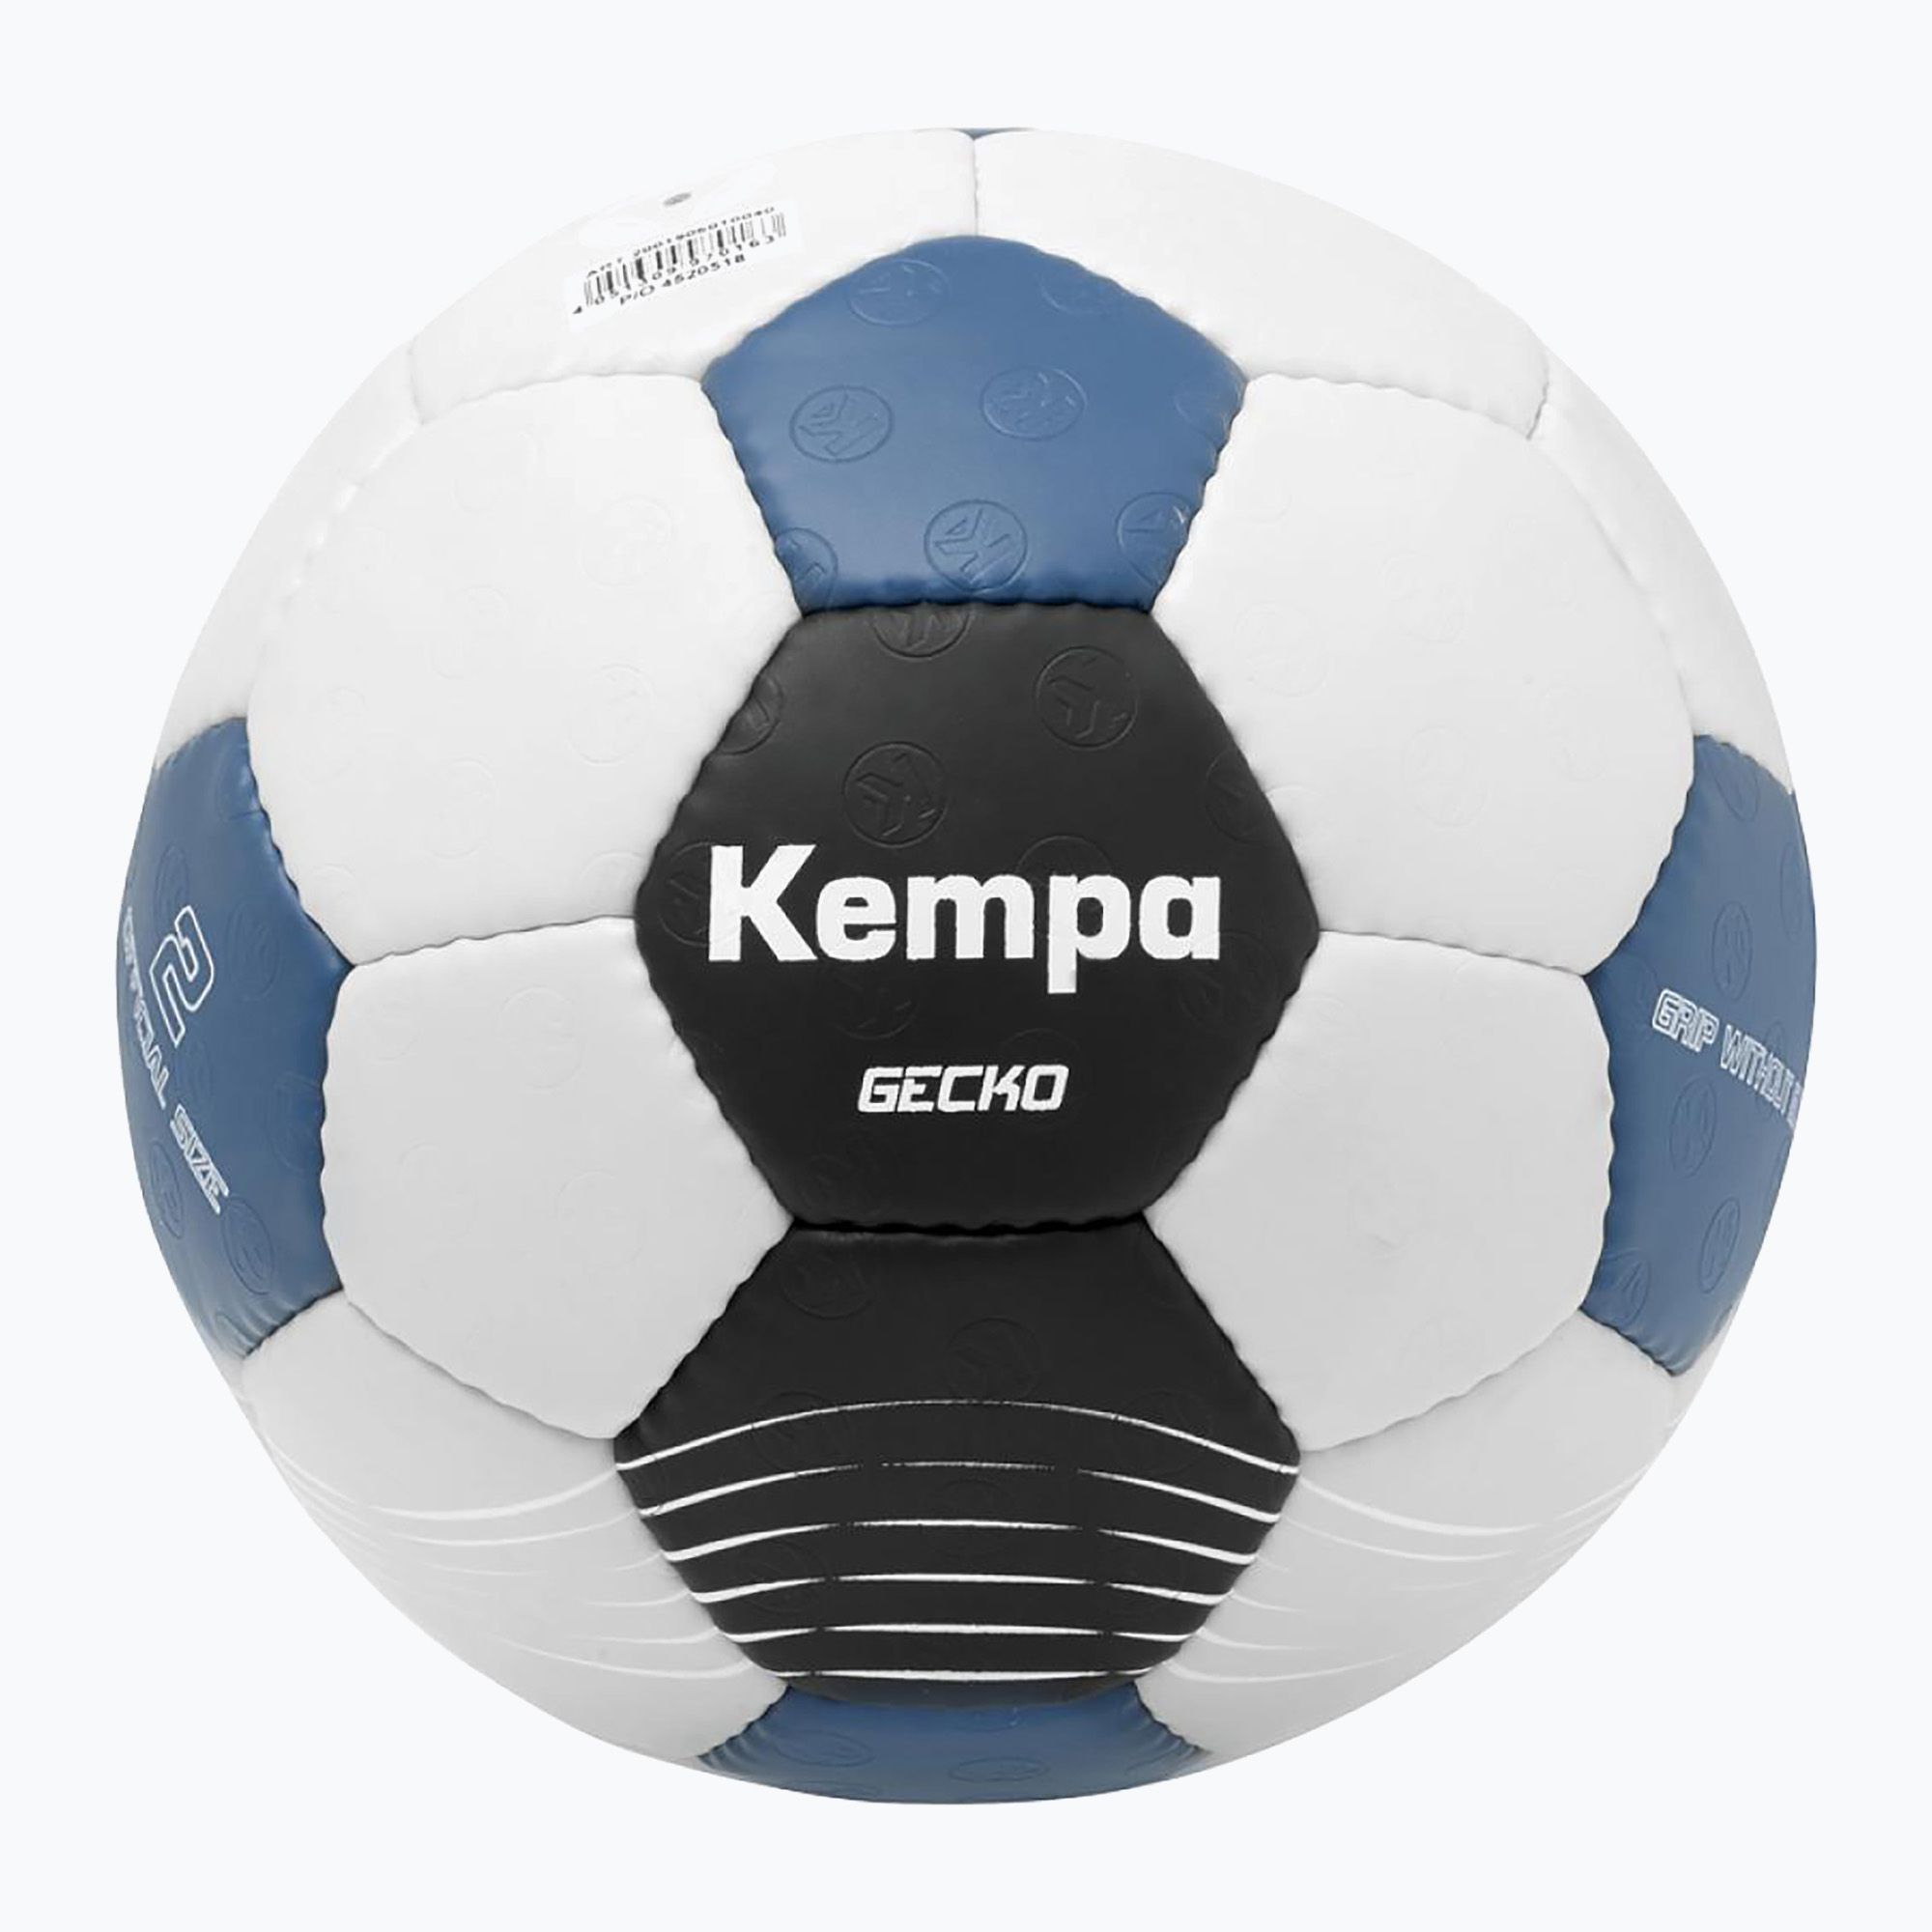 Piłka do piłki ręcznej Kempa Gecko szara/niebieska rozmiar 0 zdjęcie nr 4